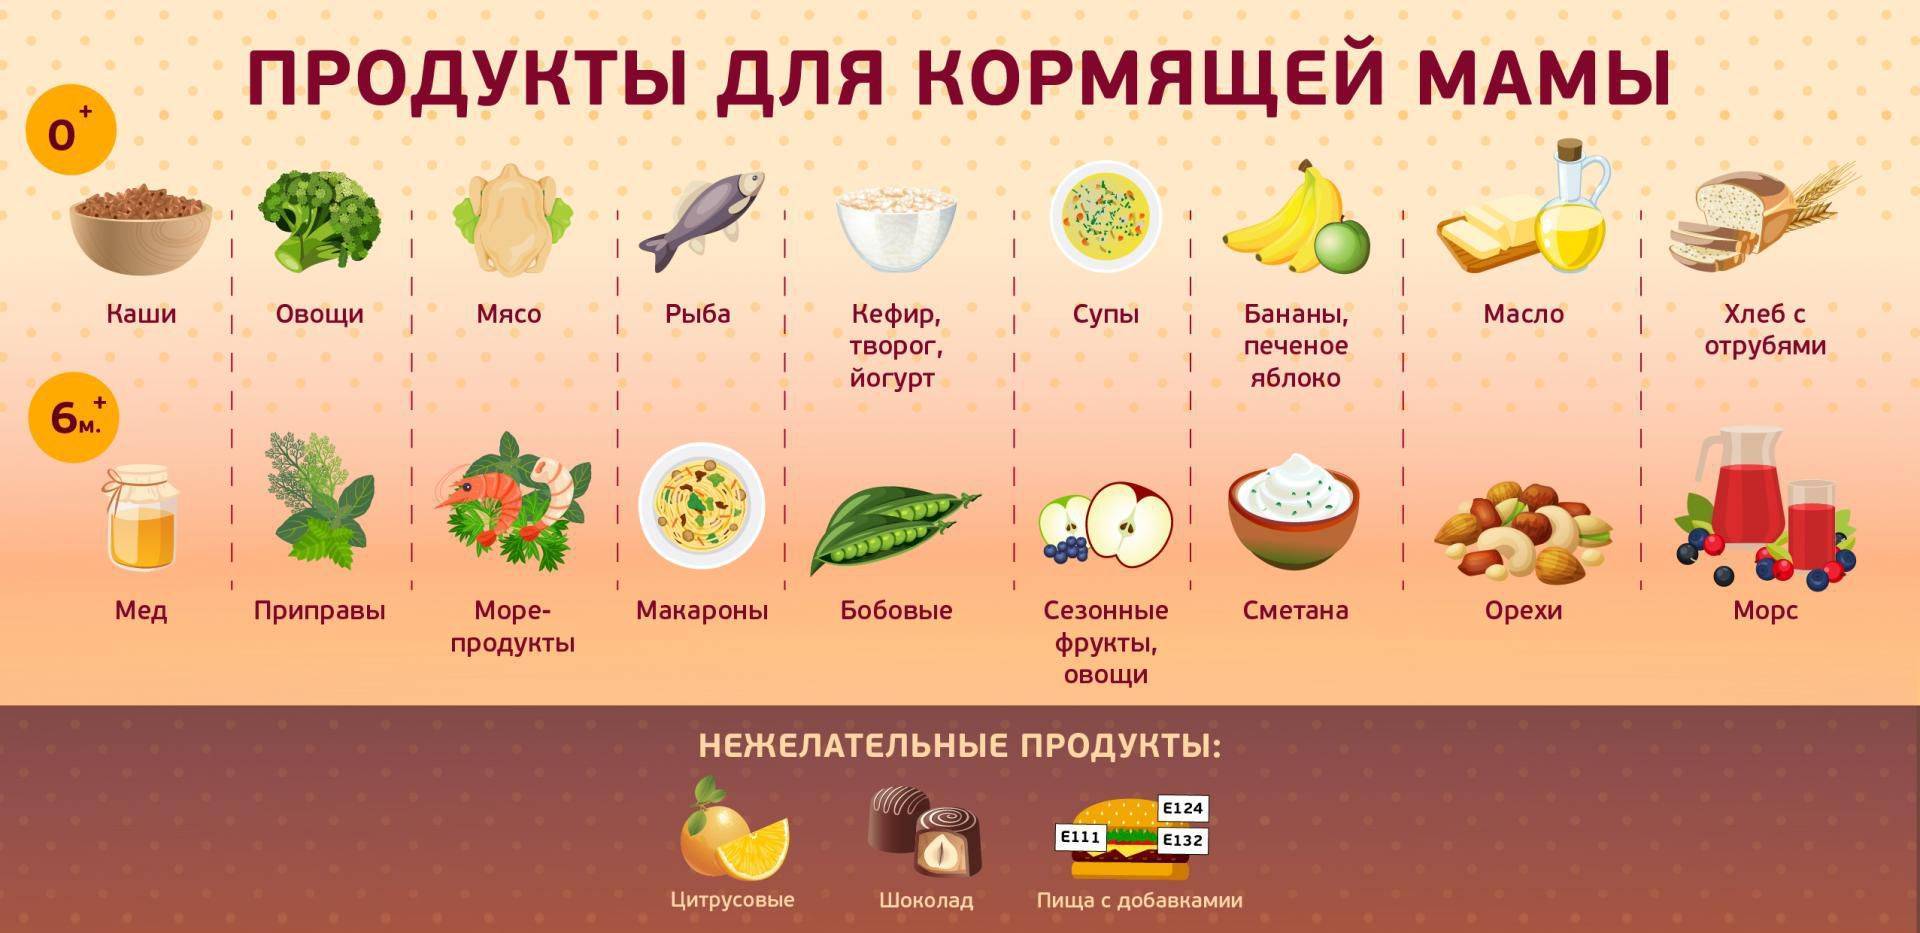 Питание кормящей мамы после родов – меню (таблица)